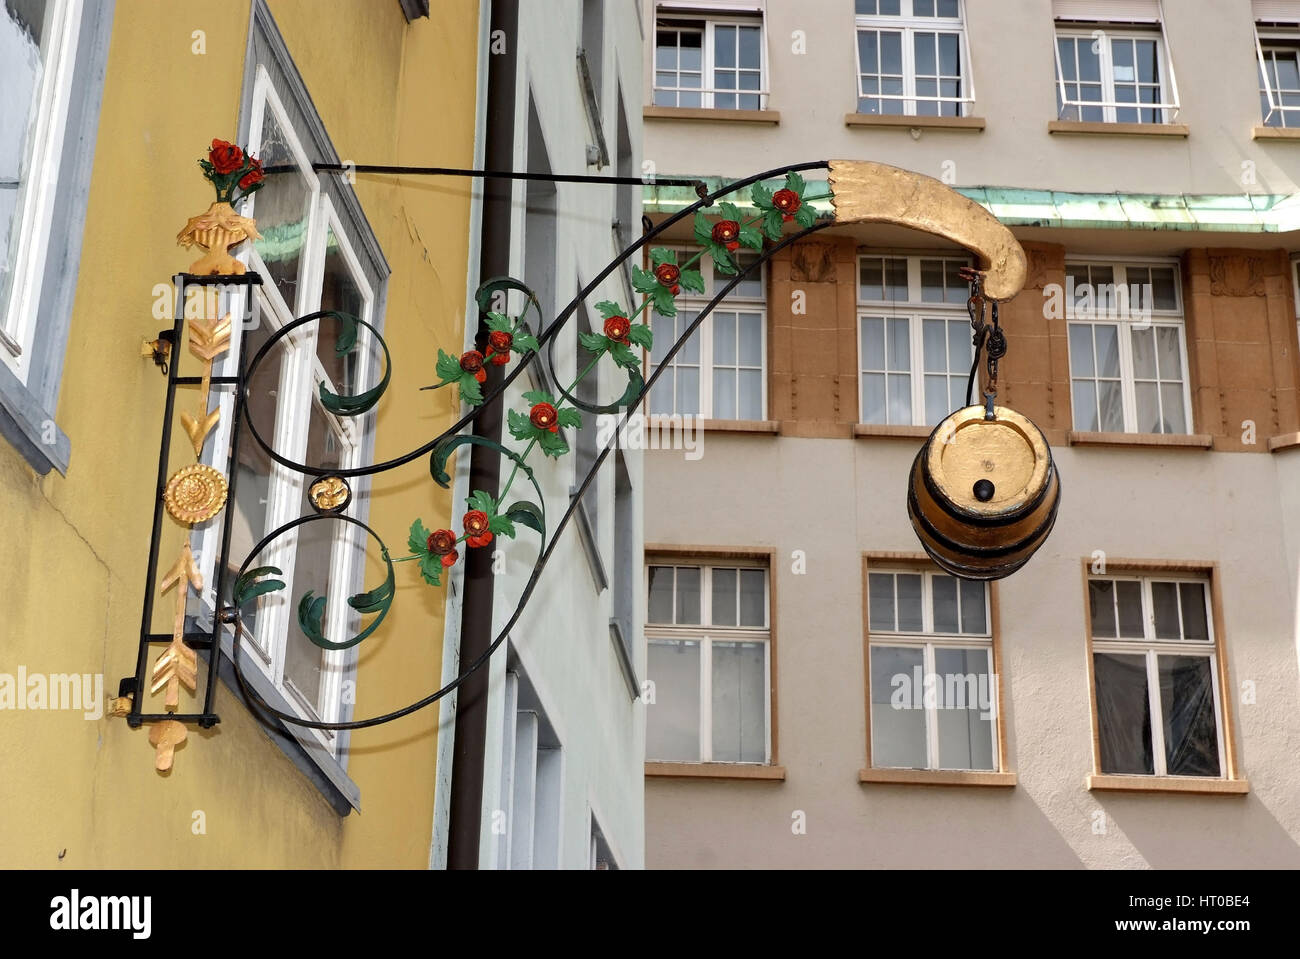 Altstadt, St.Gallen - St. Gall, Switzerland Stock Photo